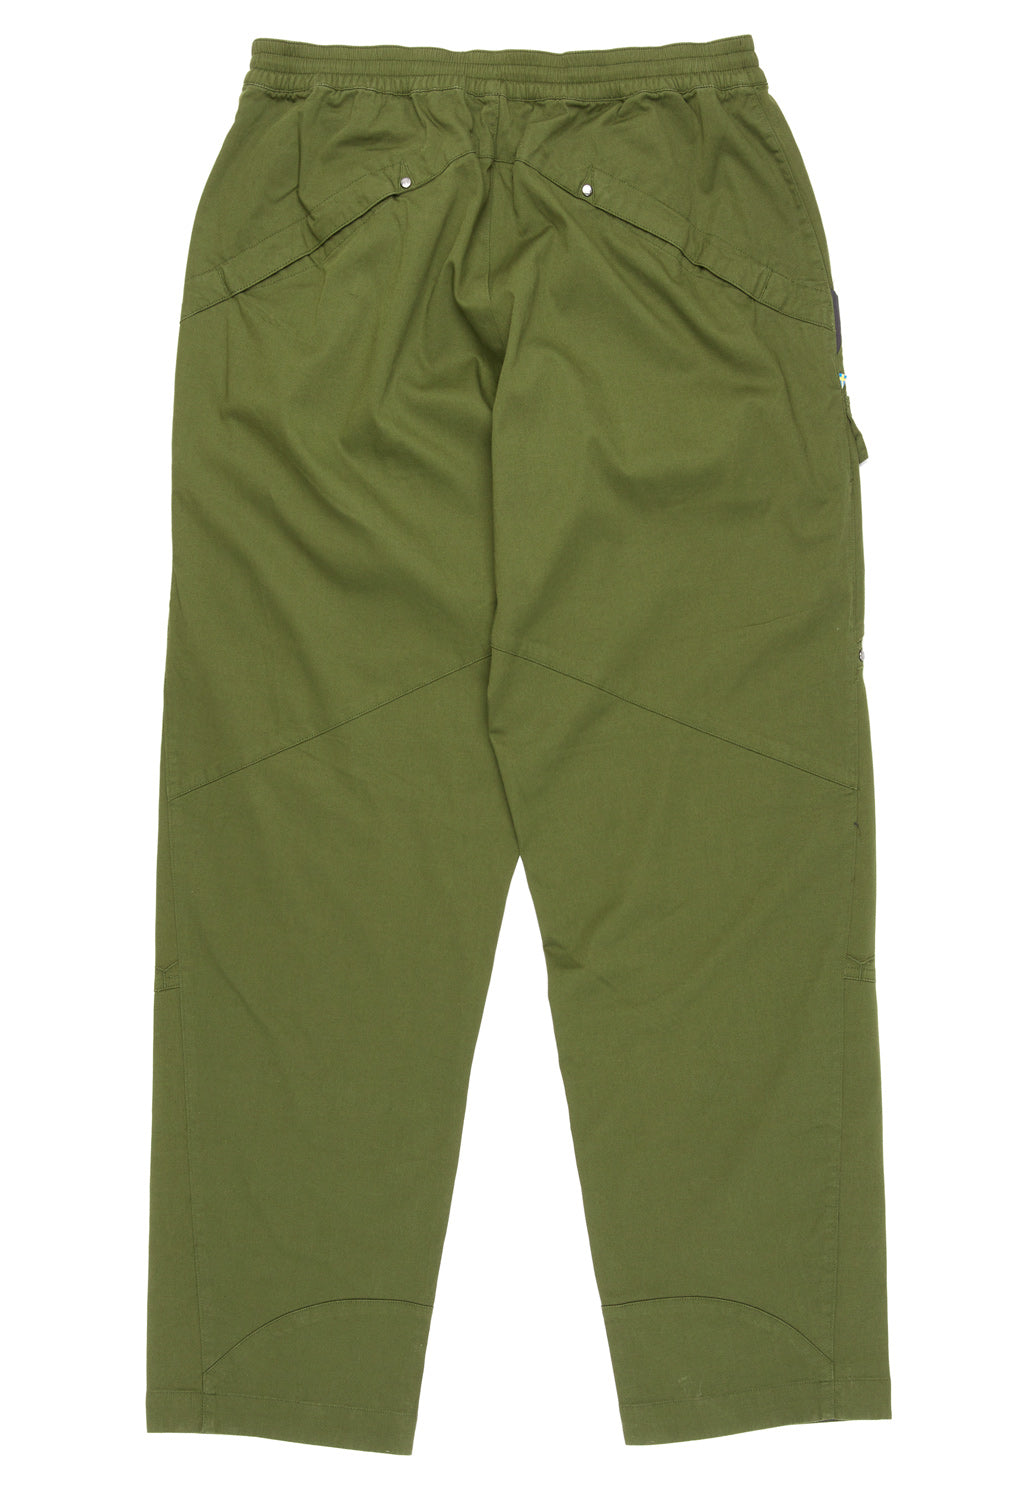 Klattermusen Men's Skjold Pants - Forest Green – Outsiders Store UK